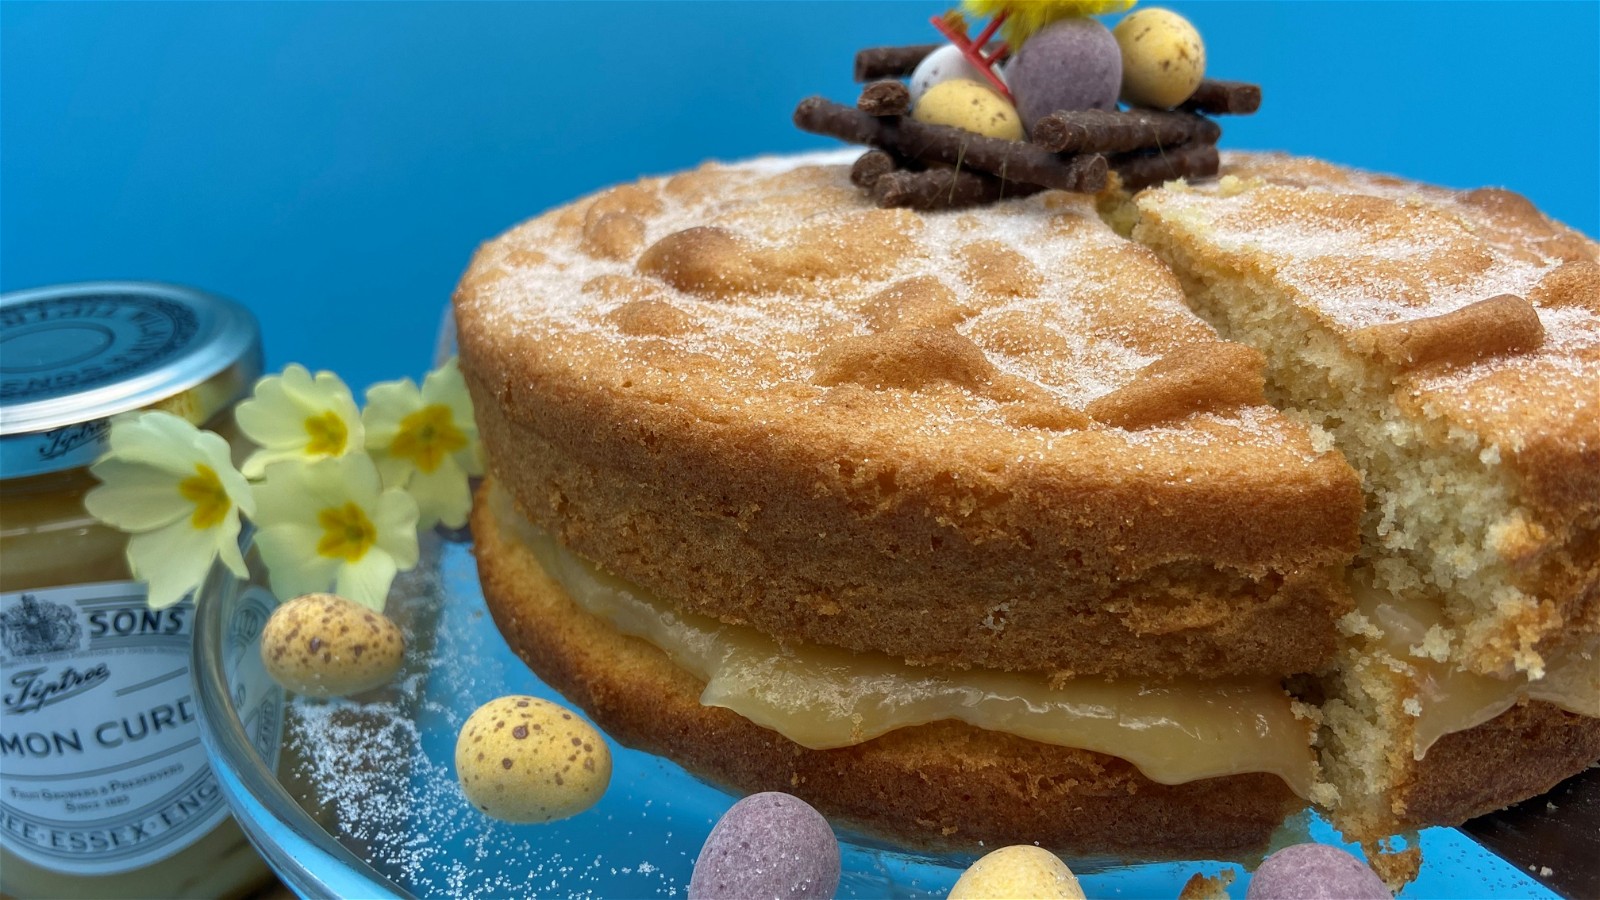 Image of Lemon Curd Easter Cake